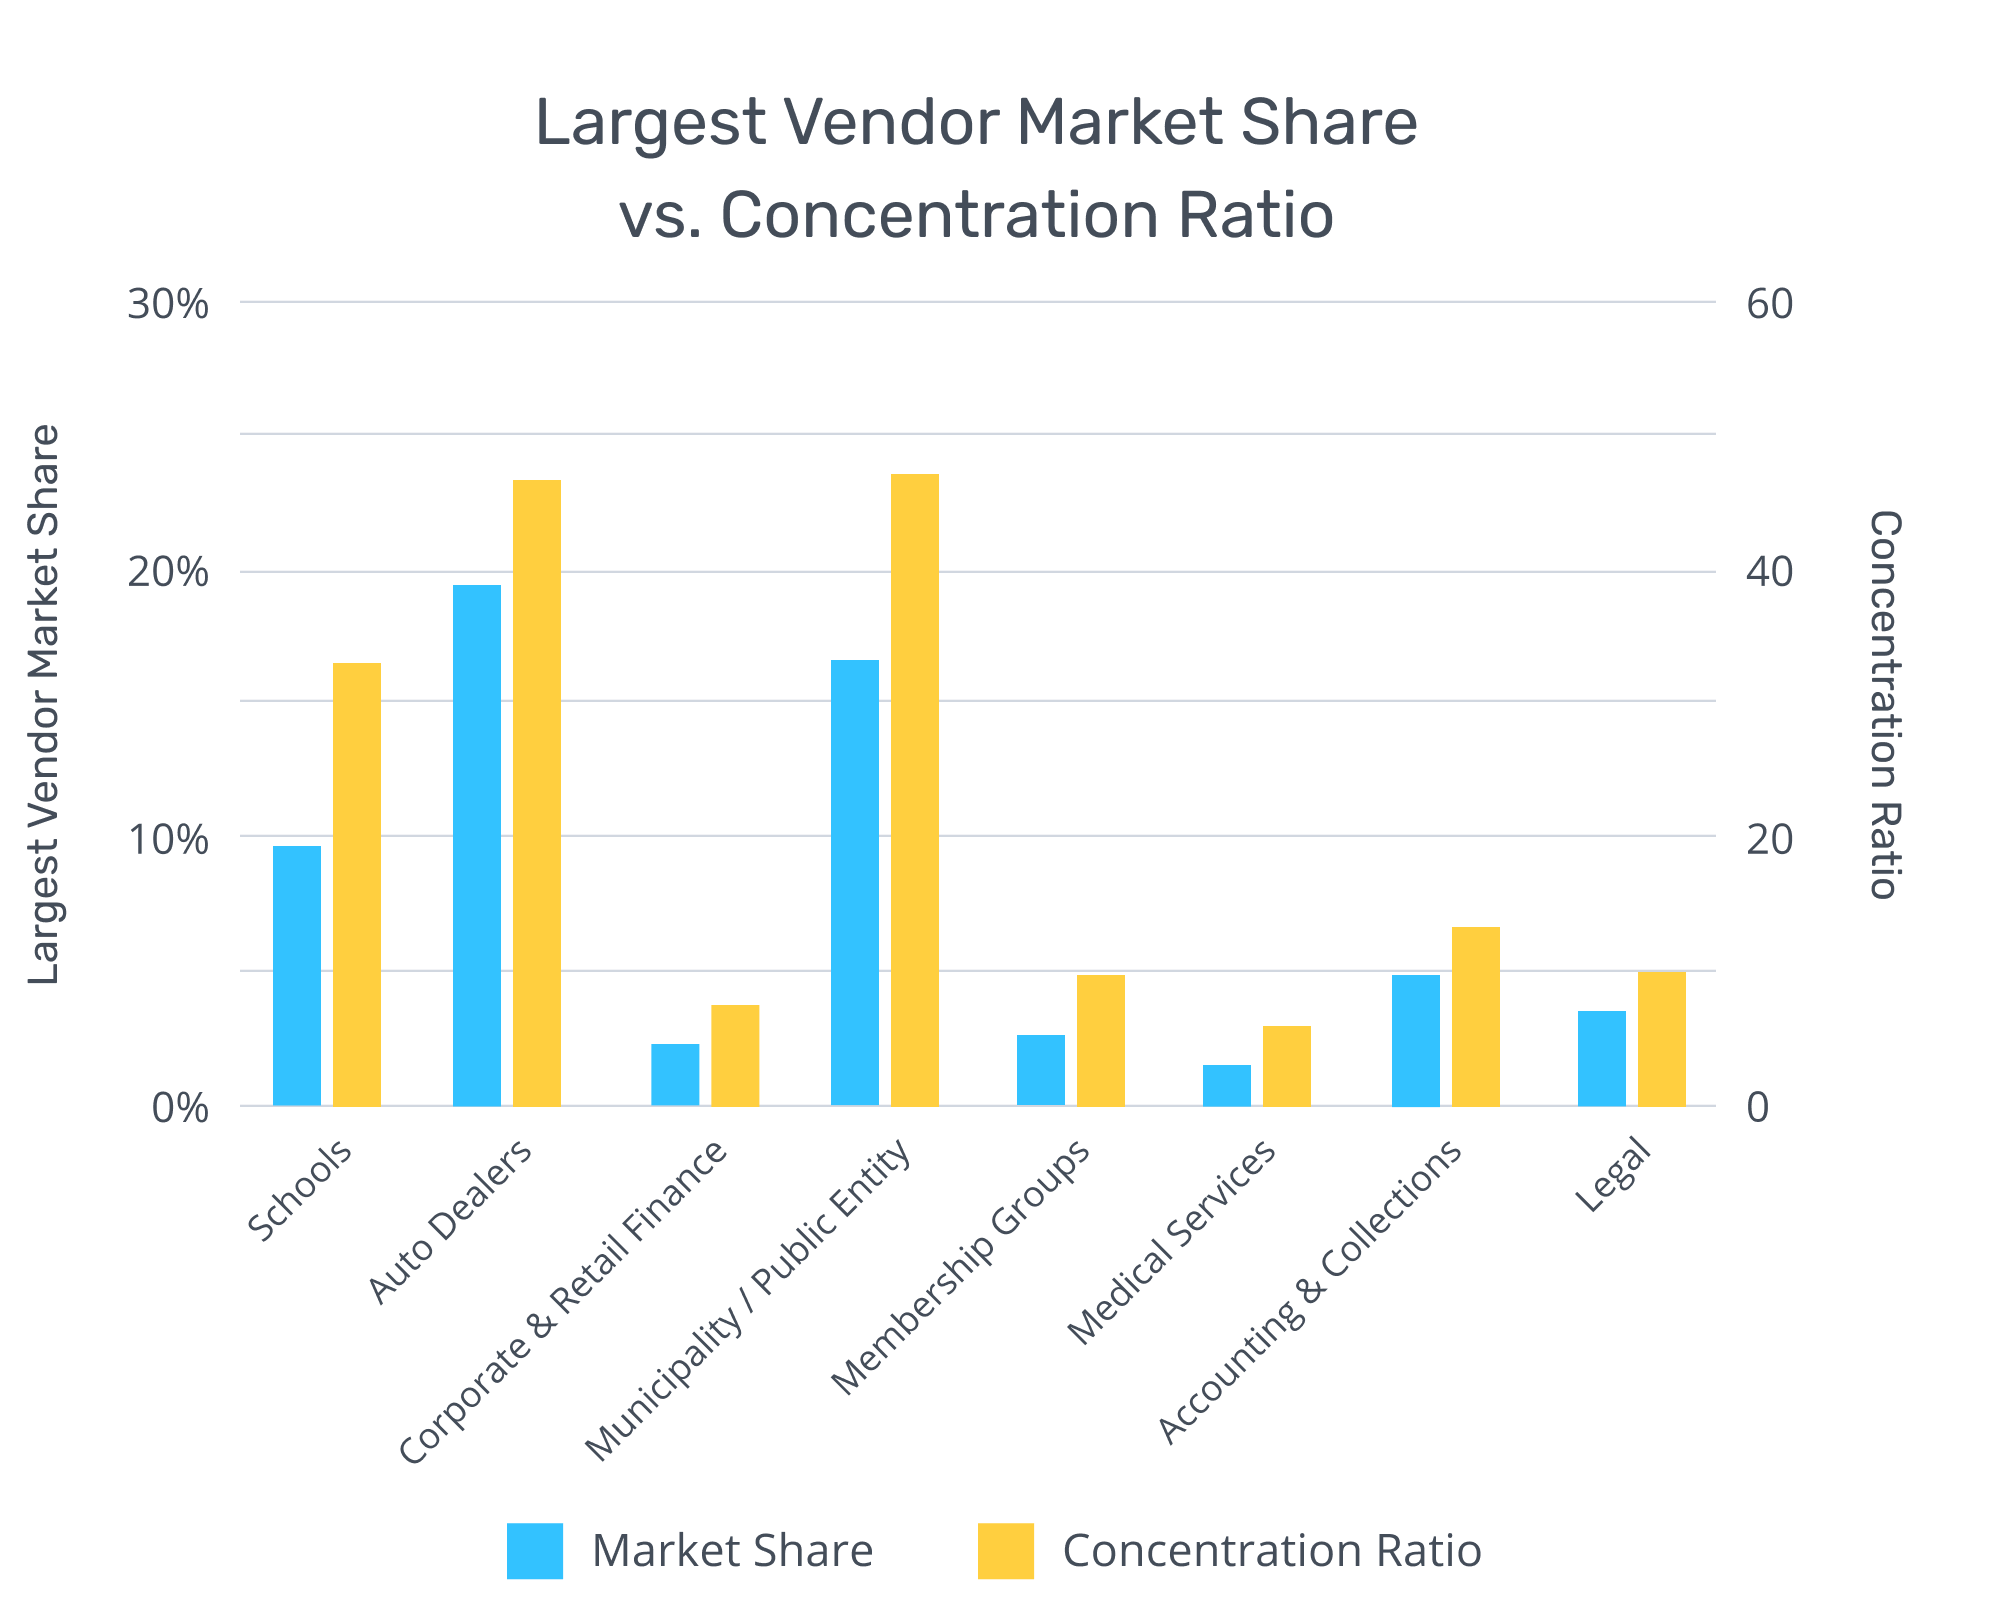 [BAR GRAPH] Largest Vendor Market Share vs. Concentration Ratio